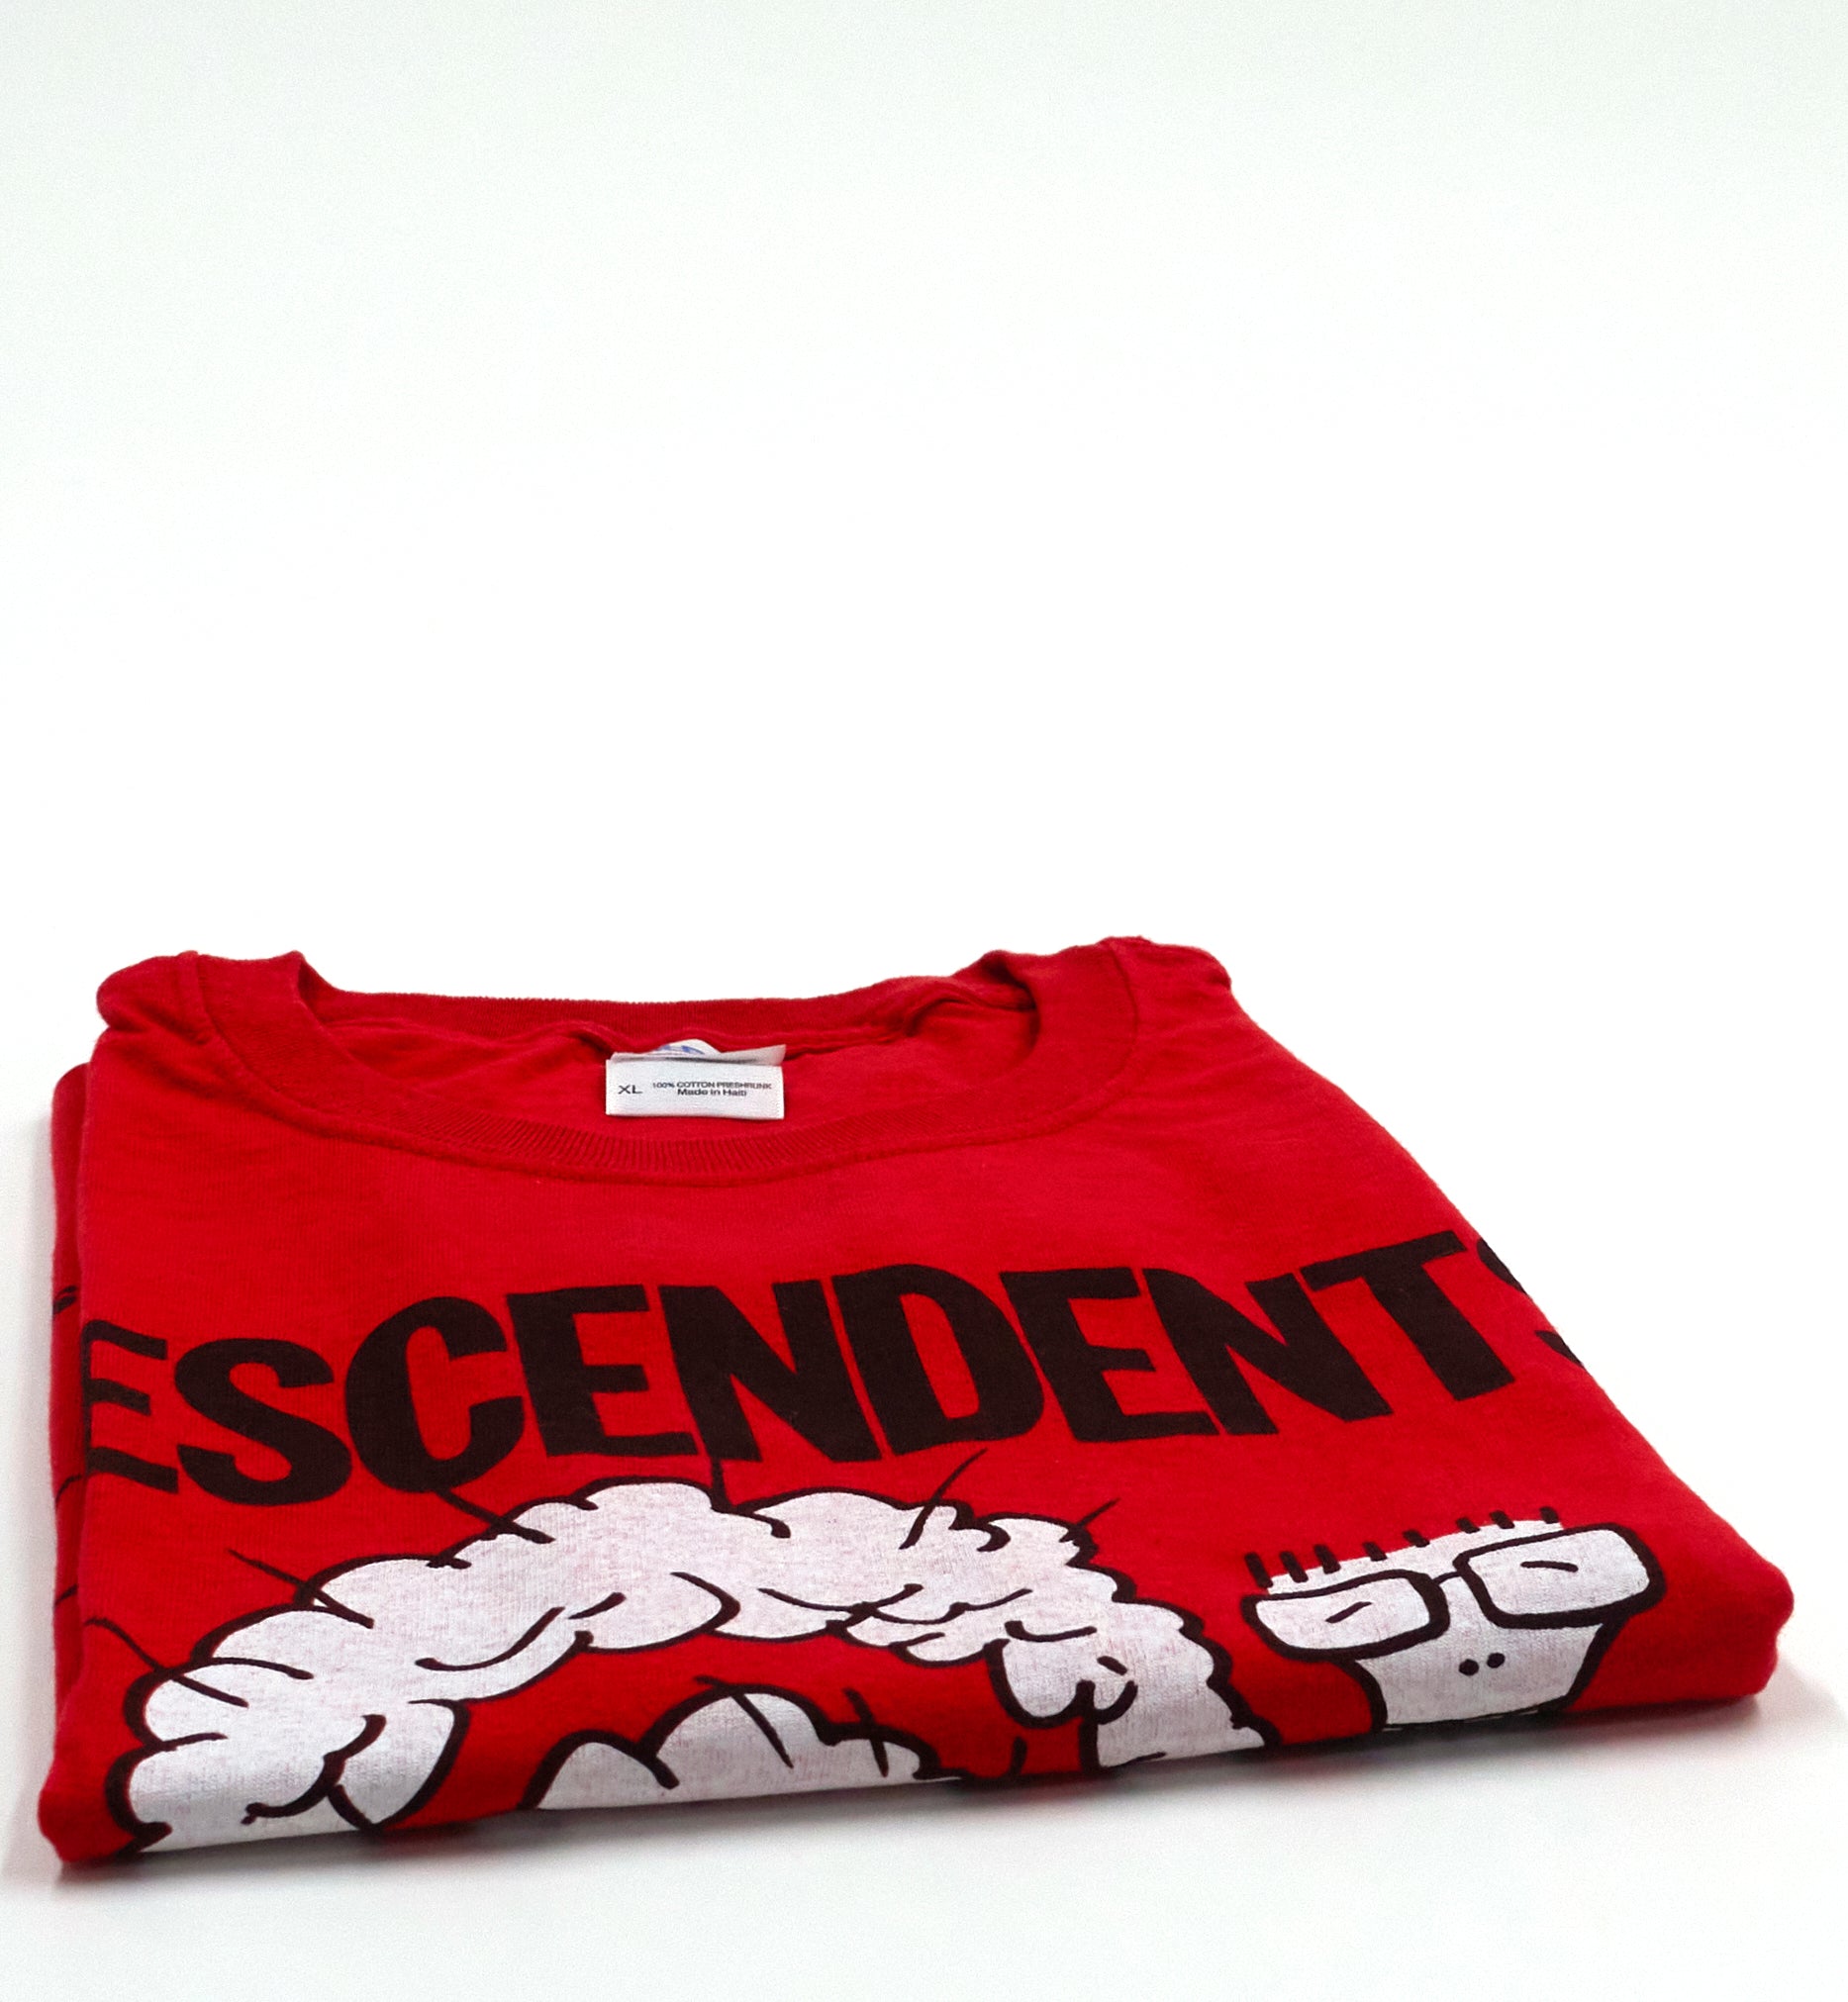 Descendents - Sonic Boom Fest 2014 Tour Shirt Size XL